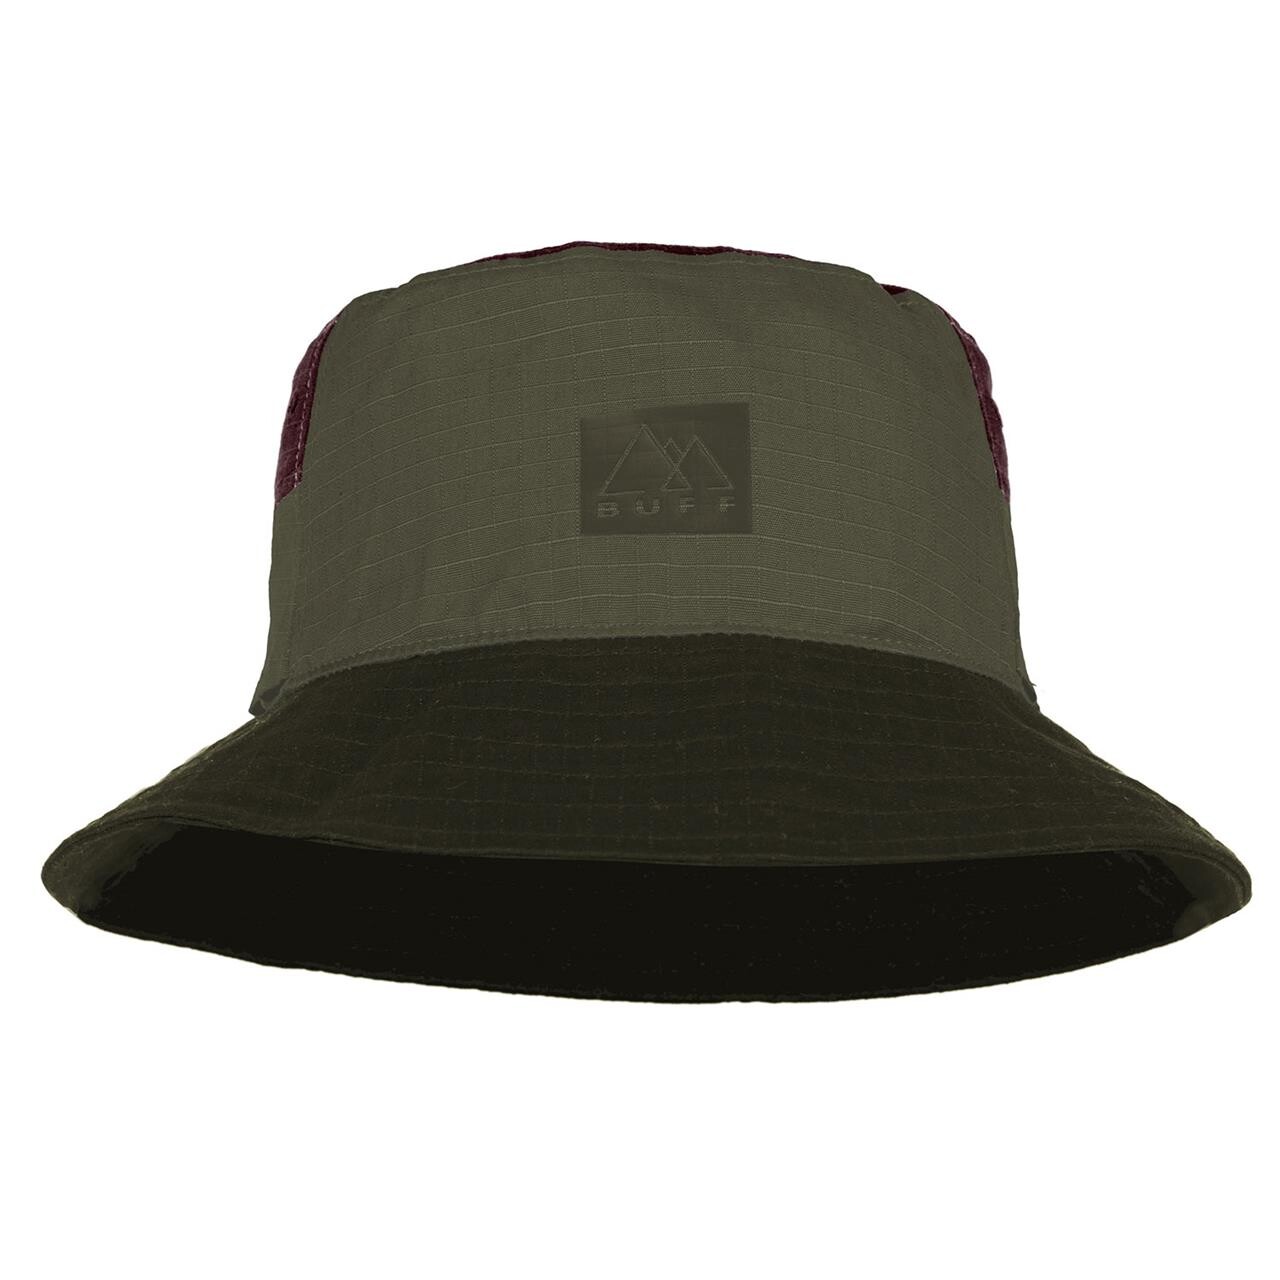 Buff Sun Bucket Hat (Beige (HAK KHAKI) Large/x-large)